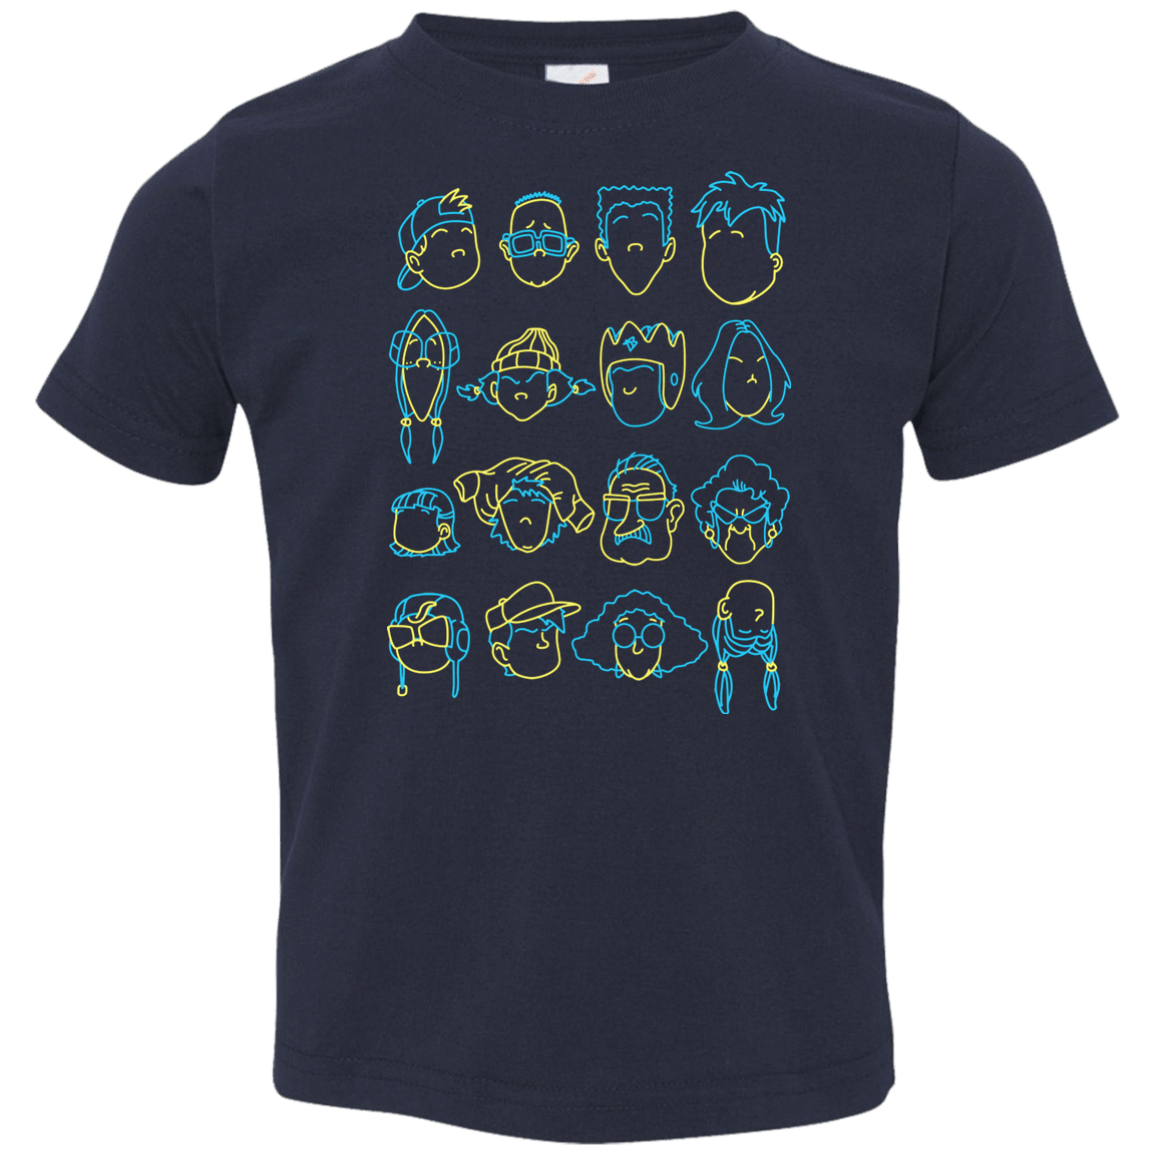 T-Shirts Navy / 2T RECESS Toddler Premium T-Shirt